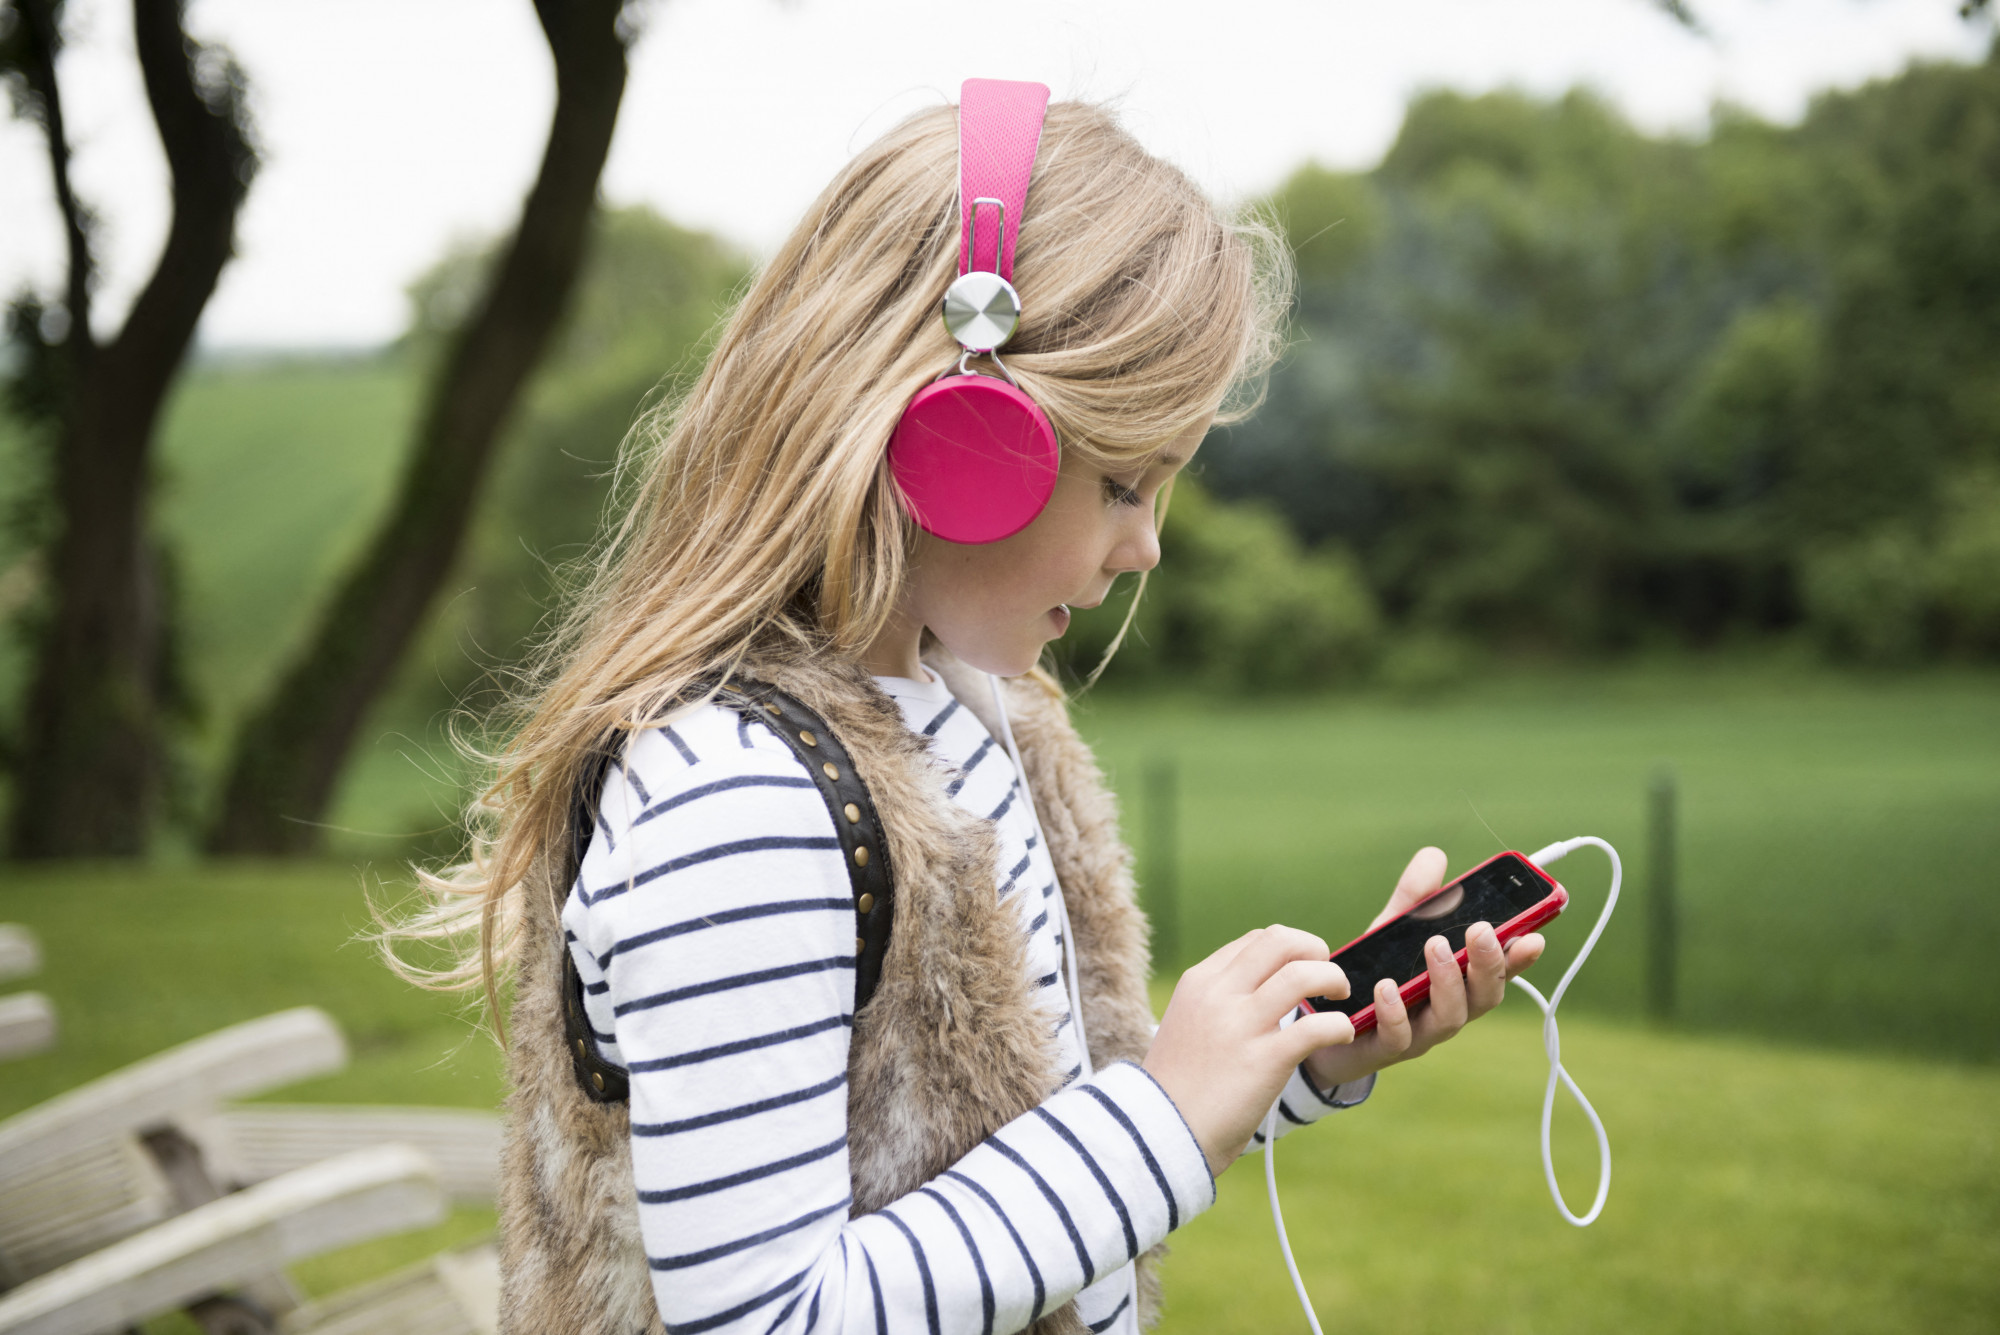 Egymilliárd ember hallása lehet veszélyben a túl hangos zenehallgatás miatt